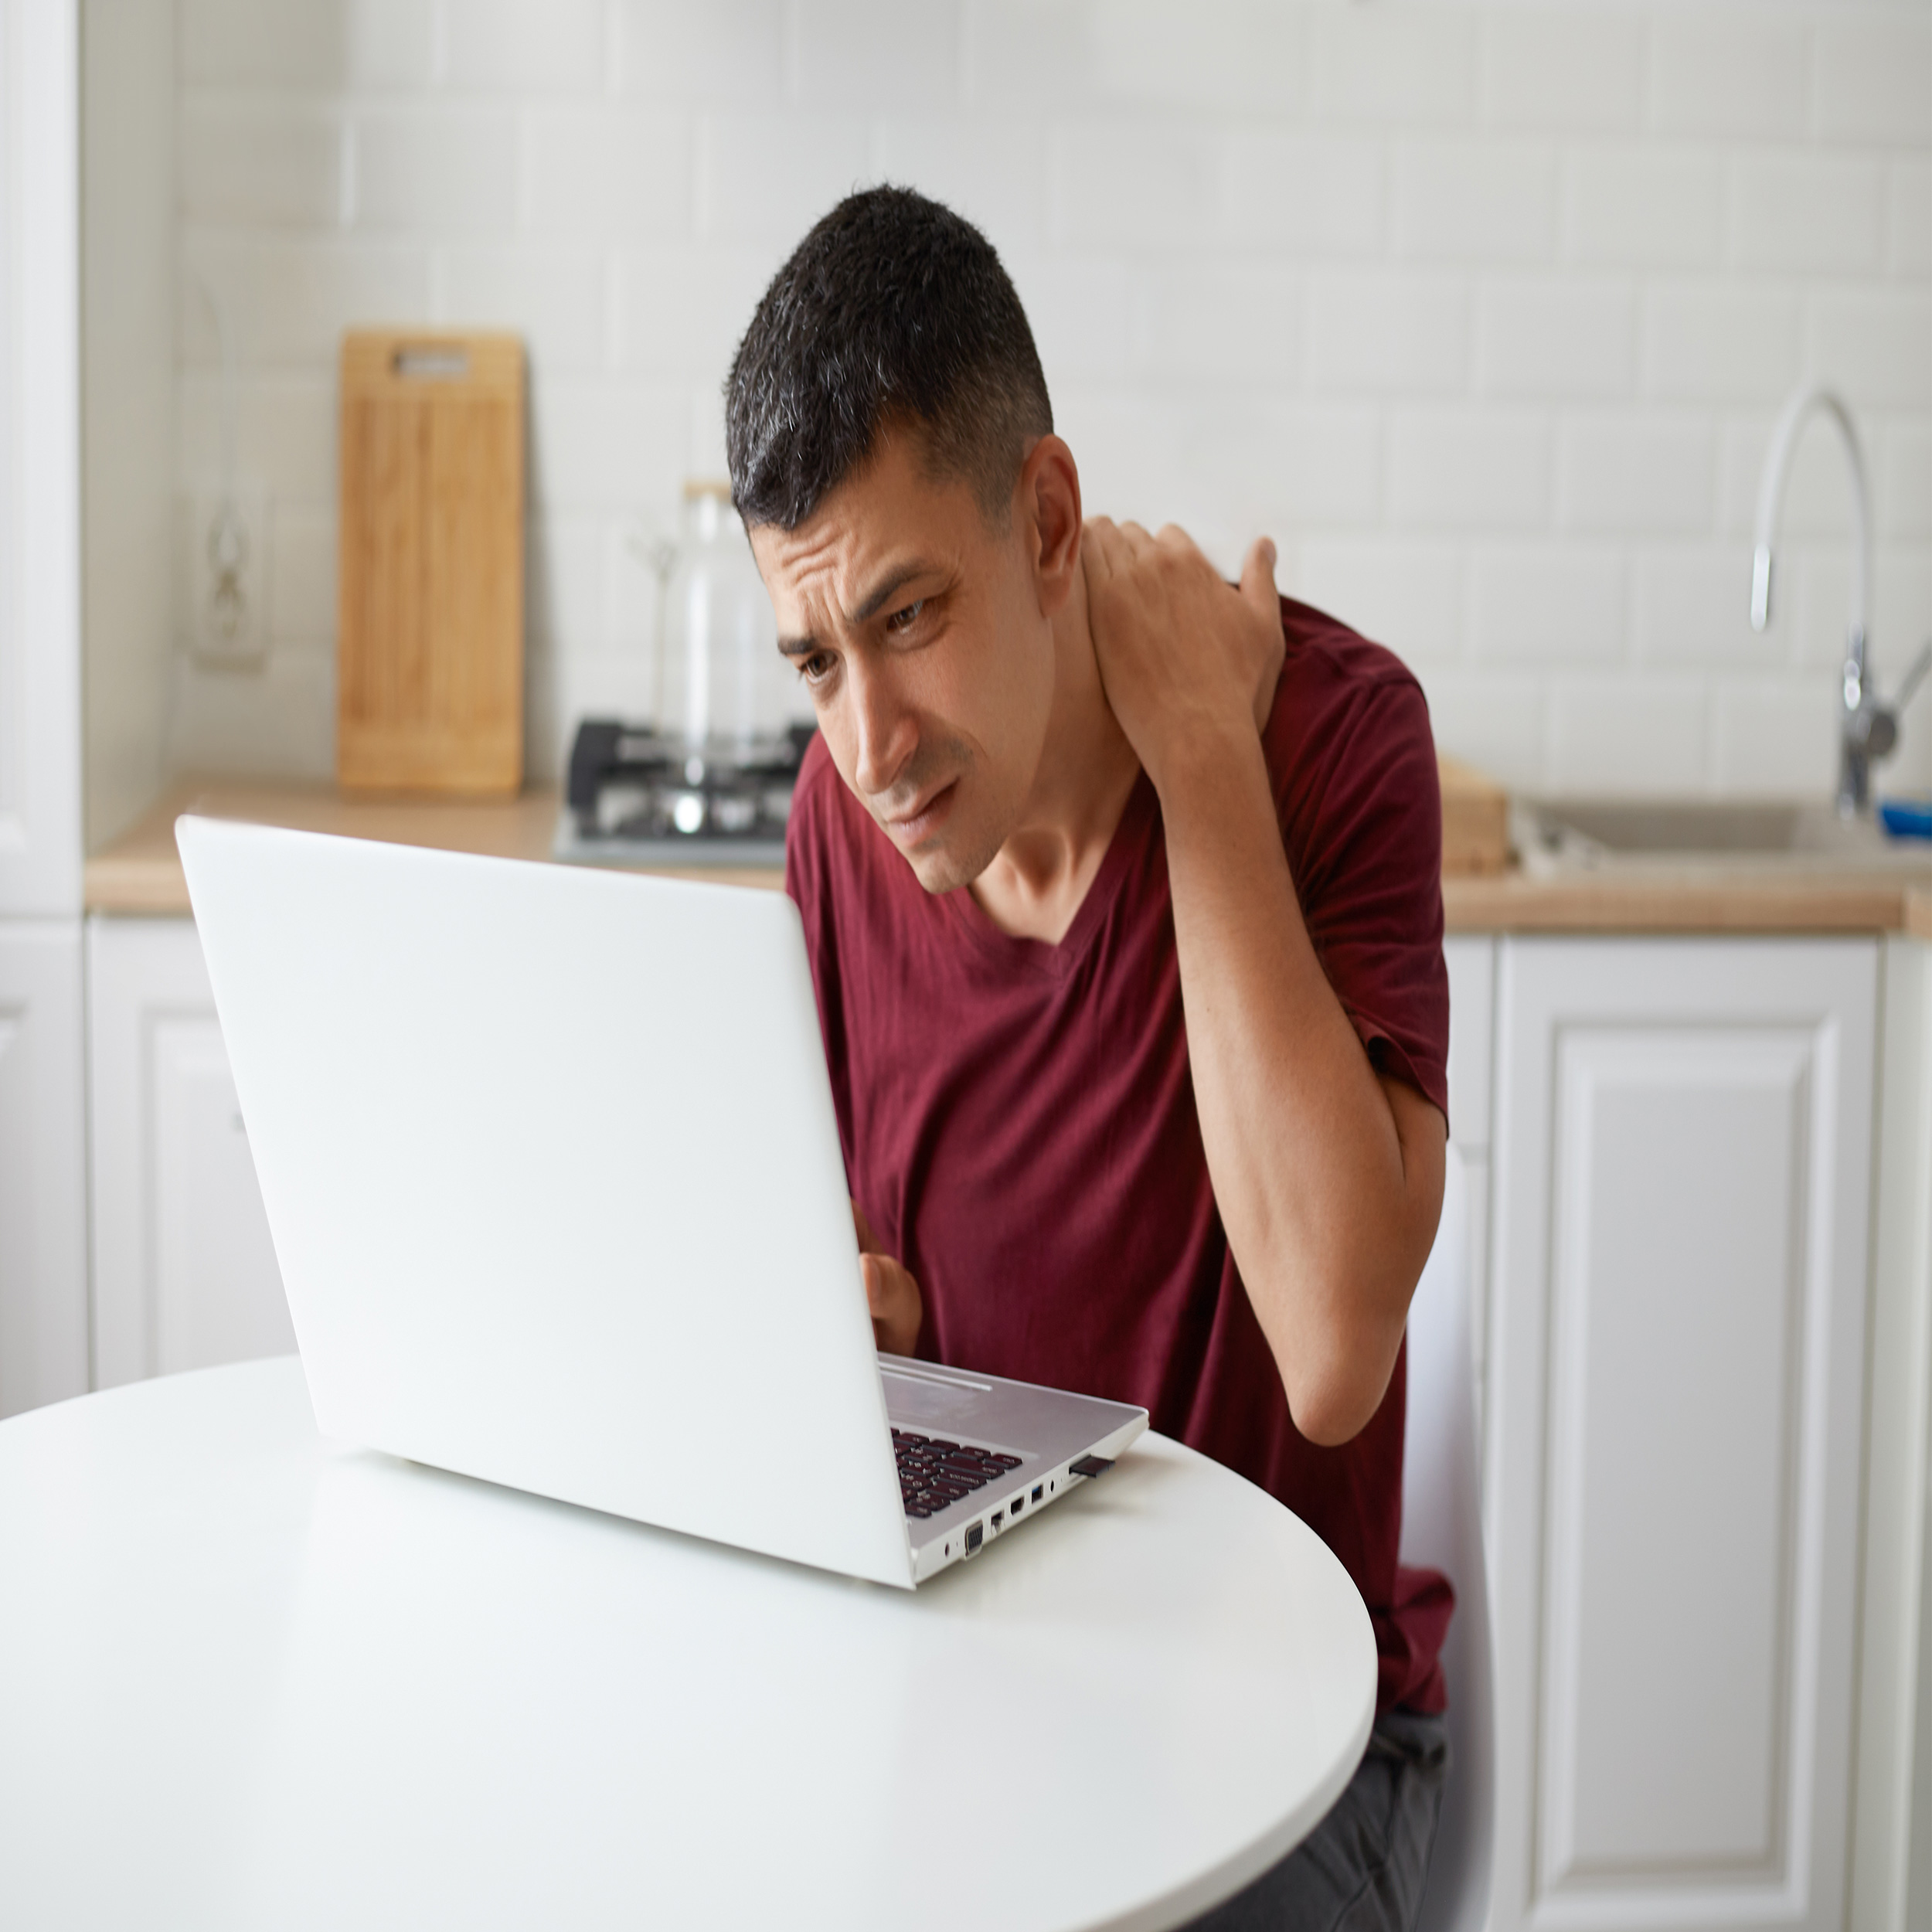 یکی از دلایل بروز درد گردن رعایت نکردن نکات ارگونومی استفاده از لپ تاپ و تلفن همراه است.